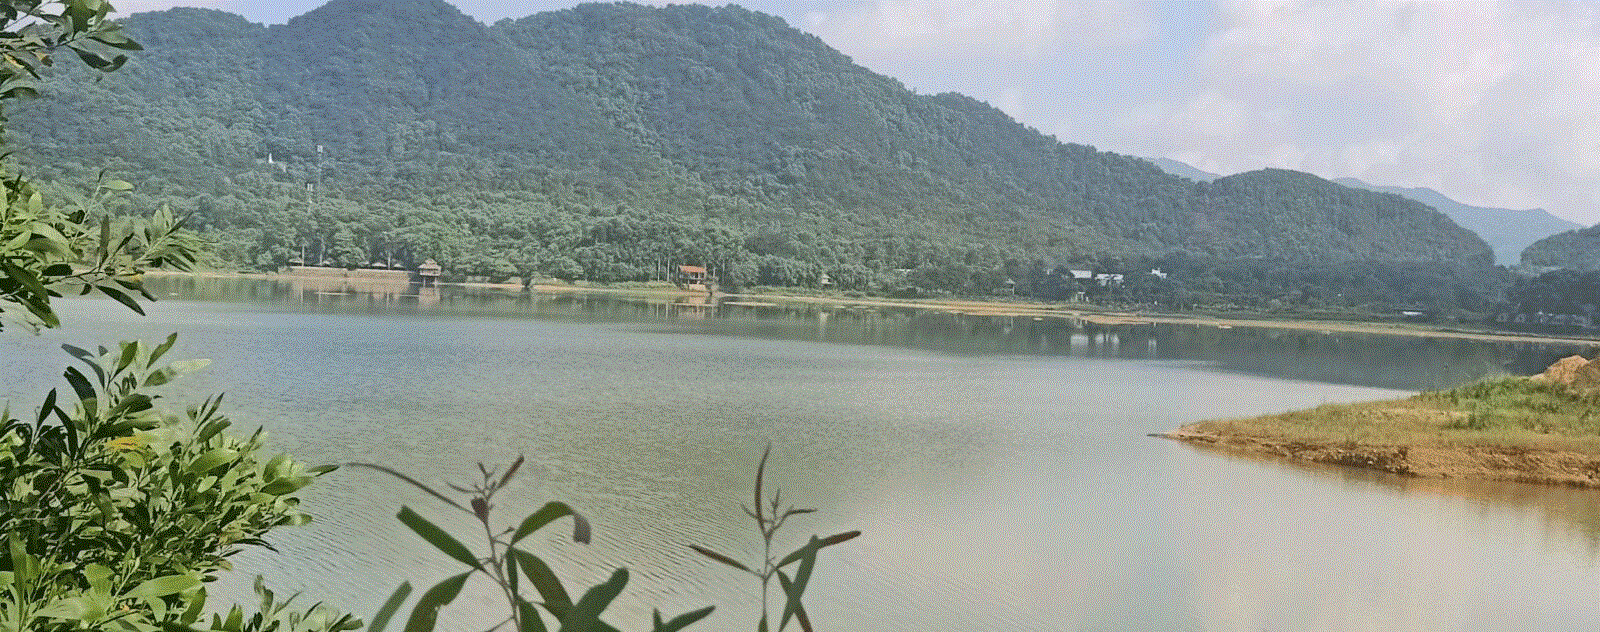 Hồ Đồng Quan